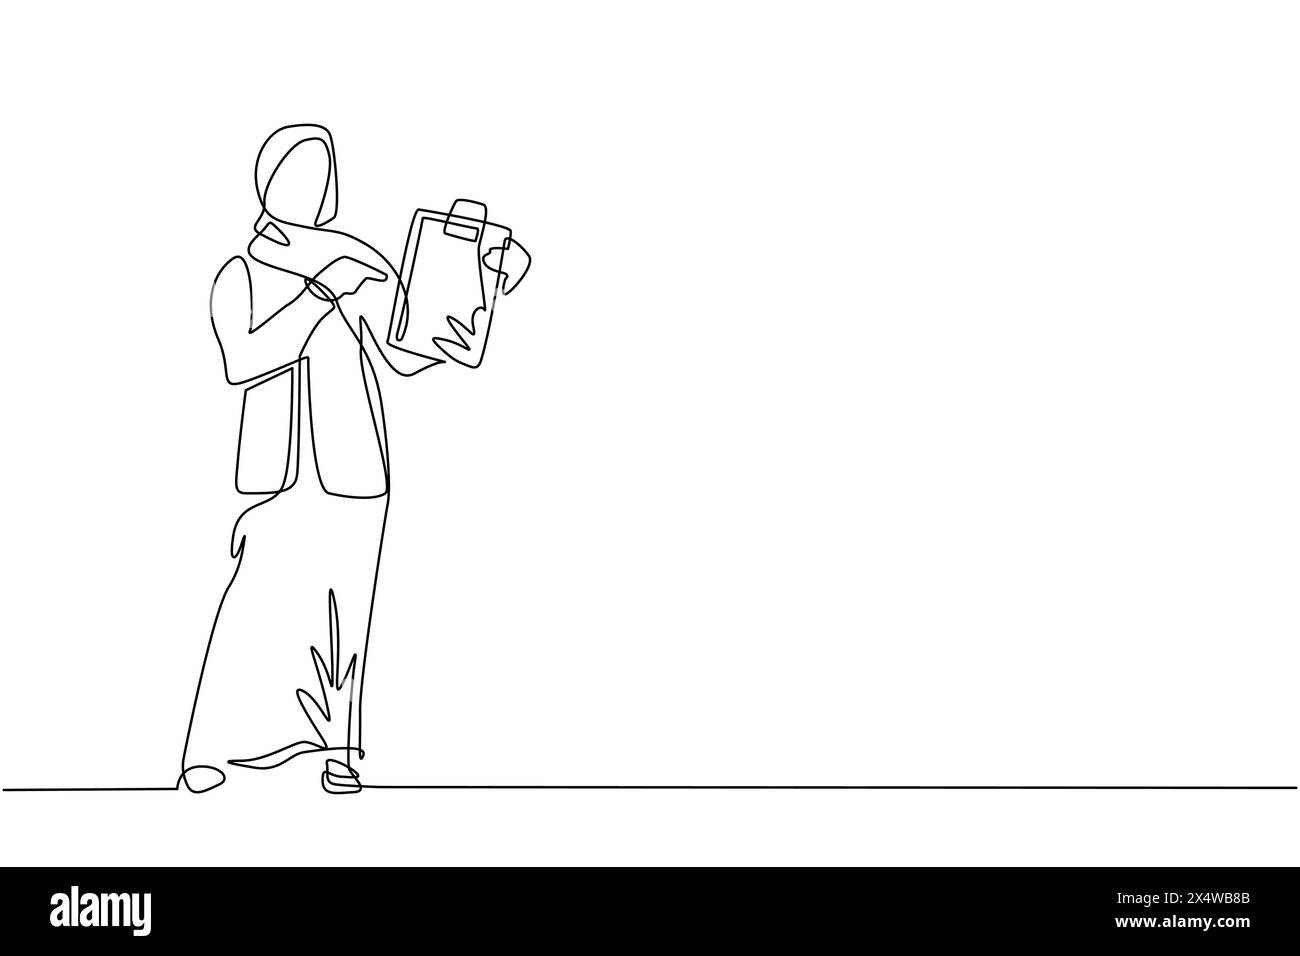 Einfache, durchgehende Zeichnungs-Büromitarbeiter, die mit Klemmbrettern stehen. Frau in formeller Kleidung. Arabische Geschäftsfrau-Zeichentrickfigur im flachen Stil. O Stock Vektor